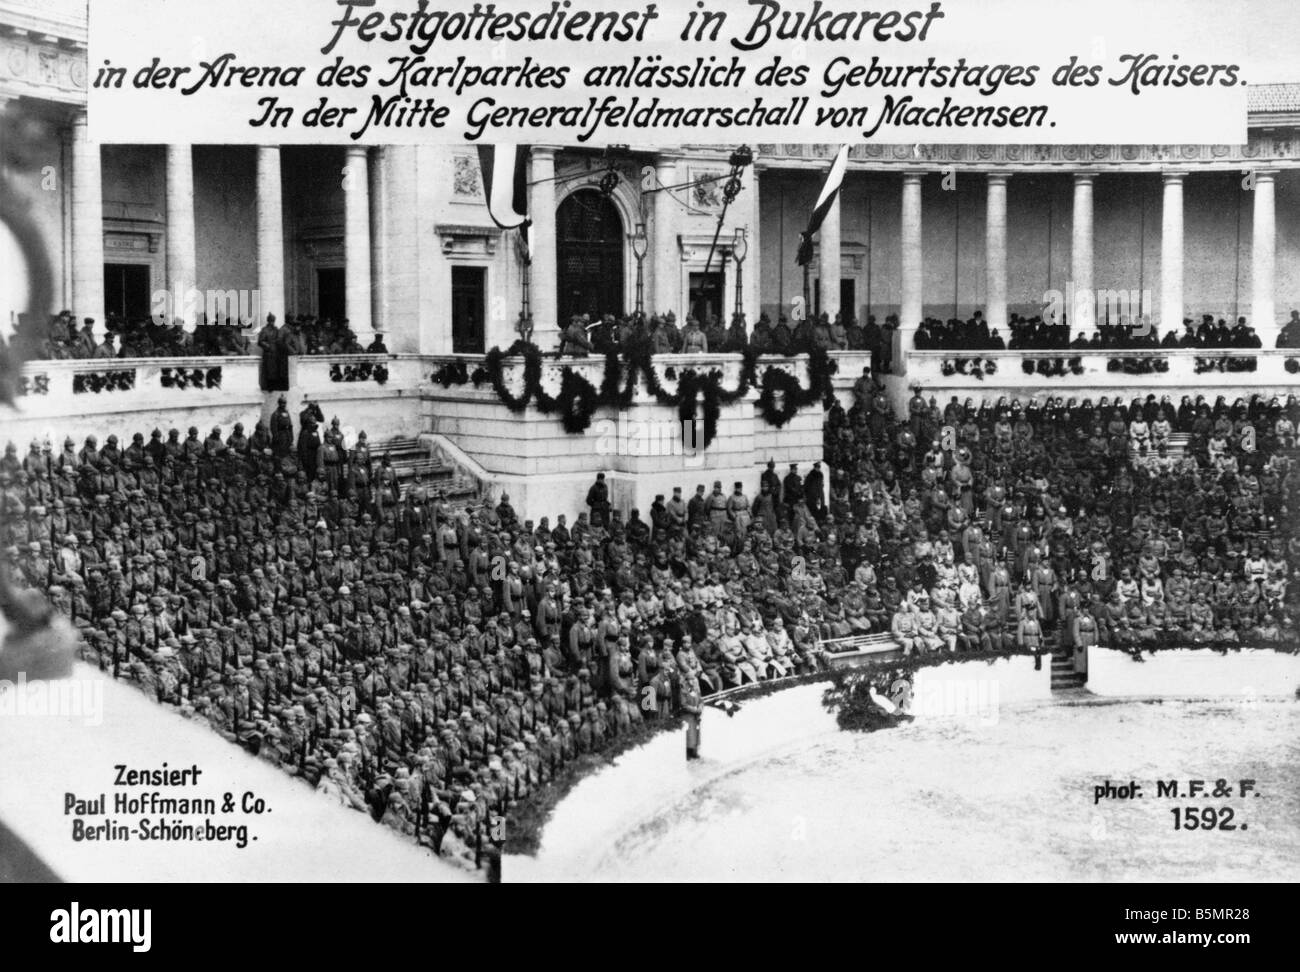 9 1917 1 27 A1 service spécial à Bucarest Photo World War 1 Roumanie service spécial à Bucarest le 27 janvier 1917 Fin de Ja Banque D'Images